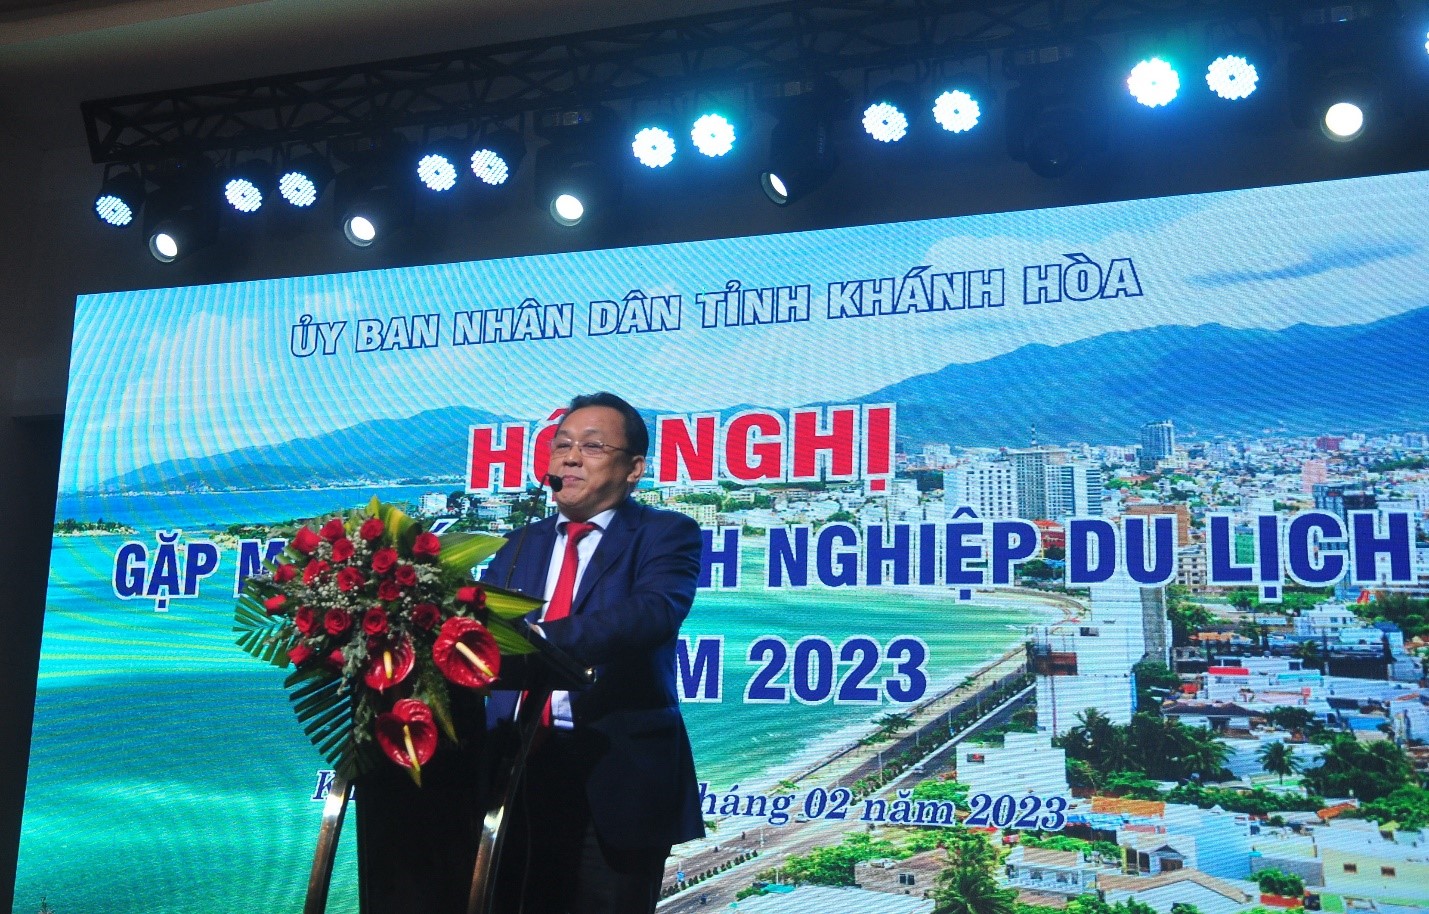 Ông Lê Hữu Hoàng, Phó Chủ tịch UBND tỉnh Khánh Hòa, phát biểu tại Hội nghị